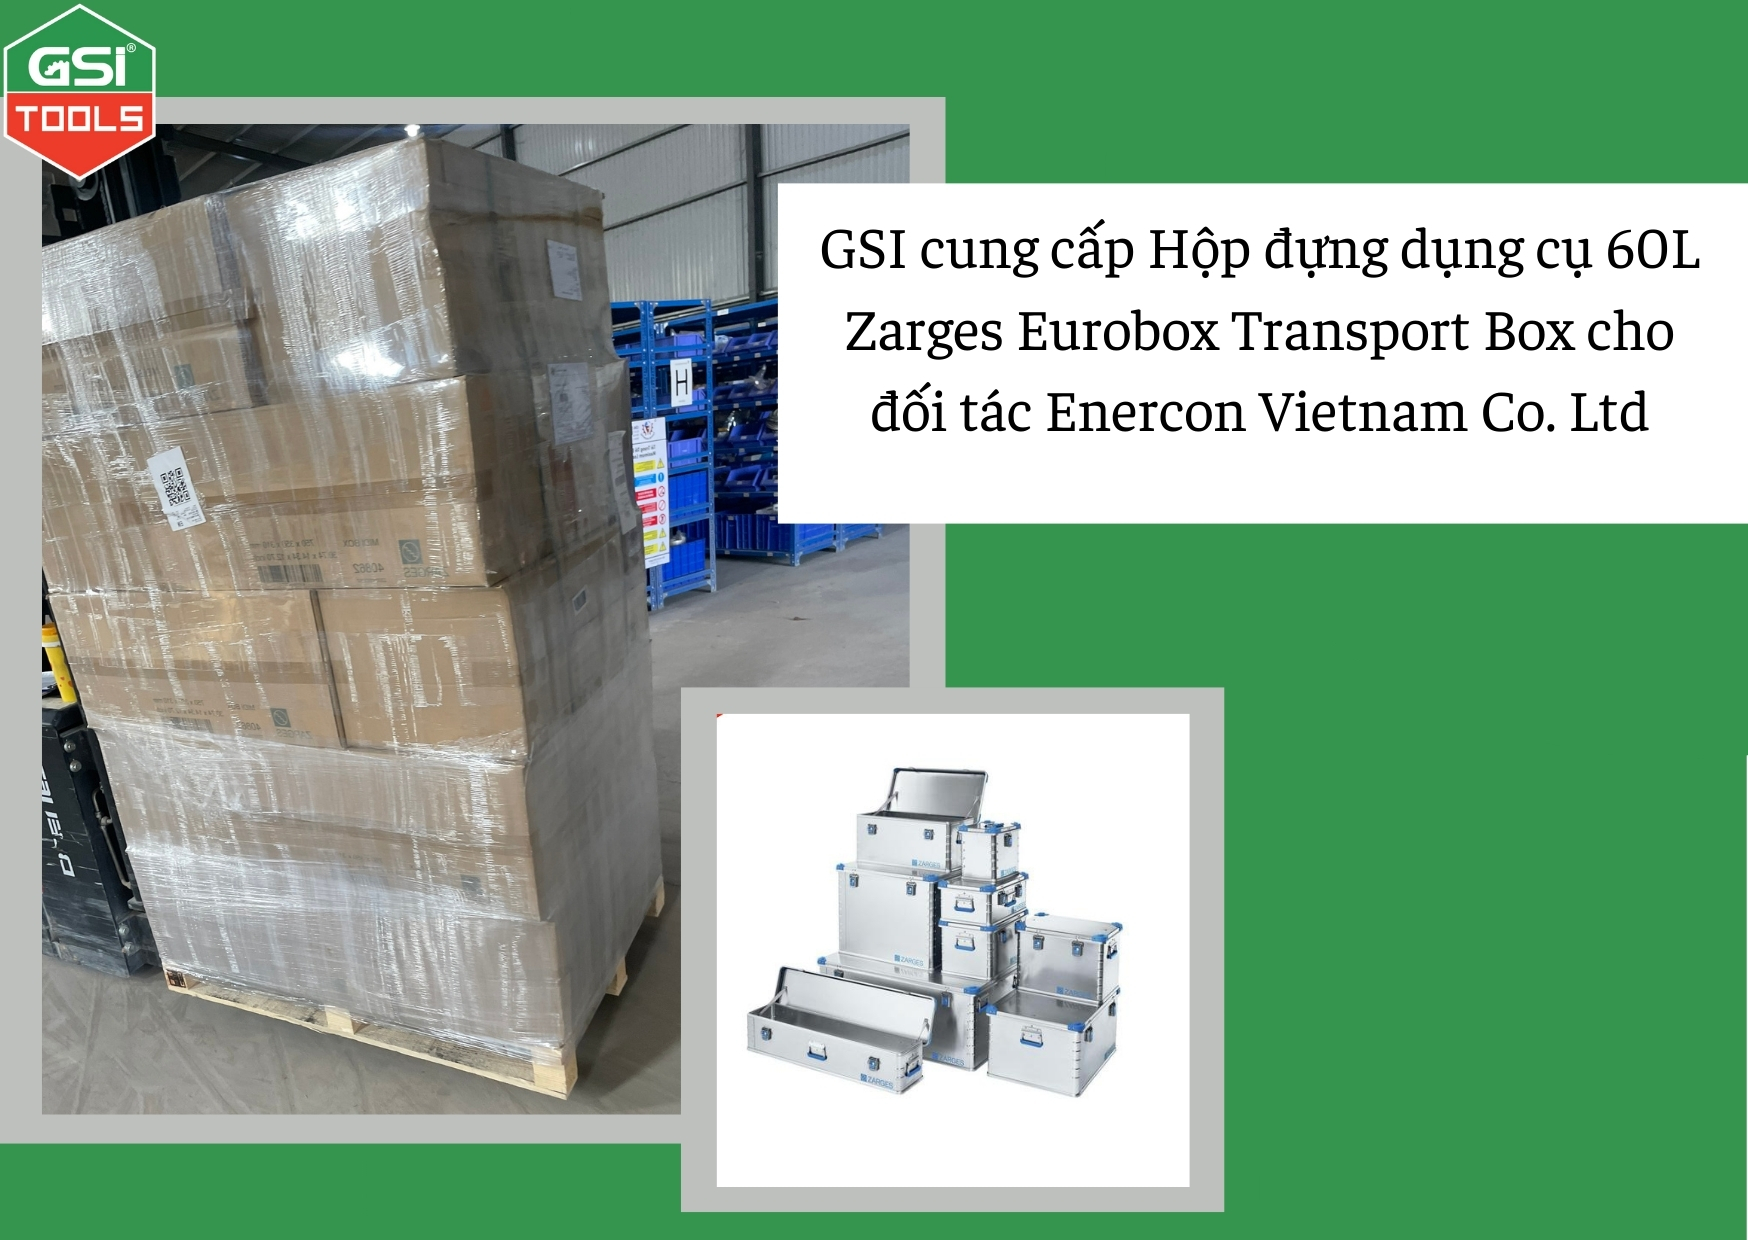 Công ty GSI cung cấp Hộp đựng dụng cụ 60L Zarges Eurobox Transport Box cho Enercon Vietnam Co. Ltd